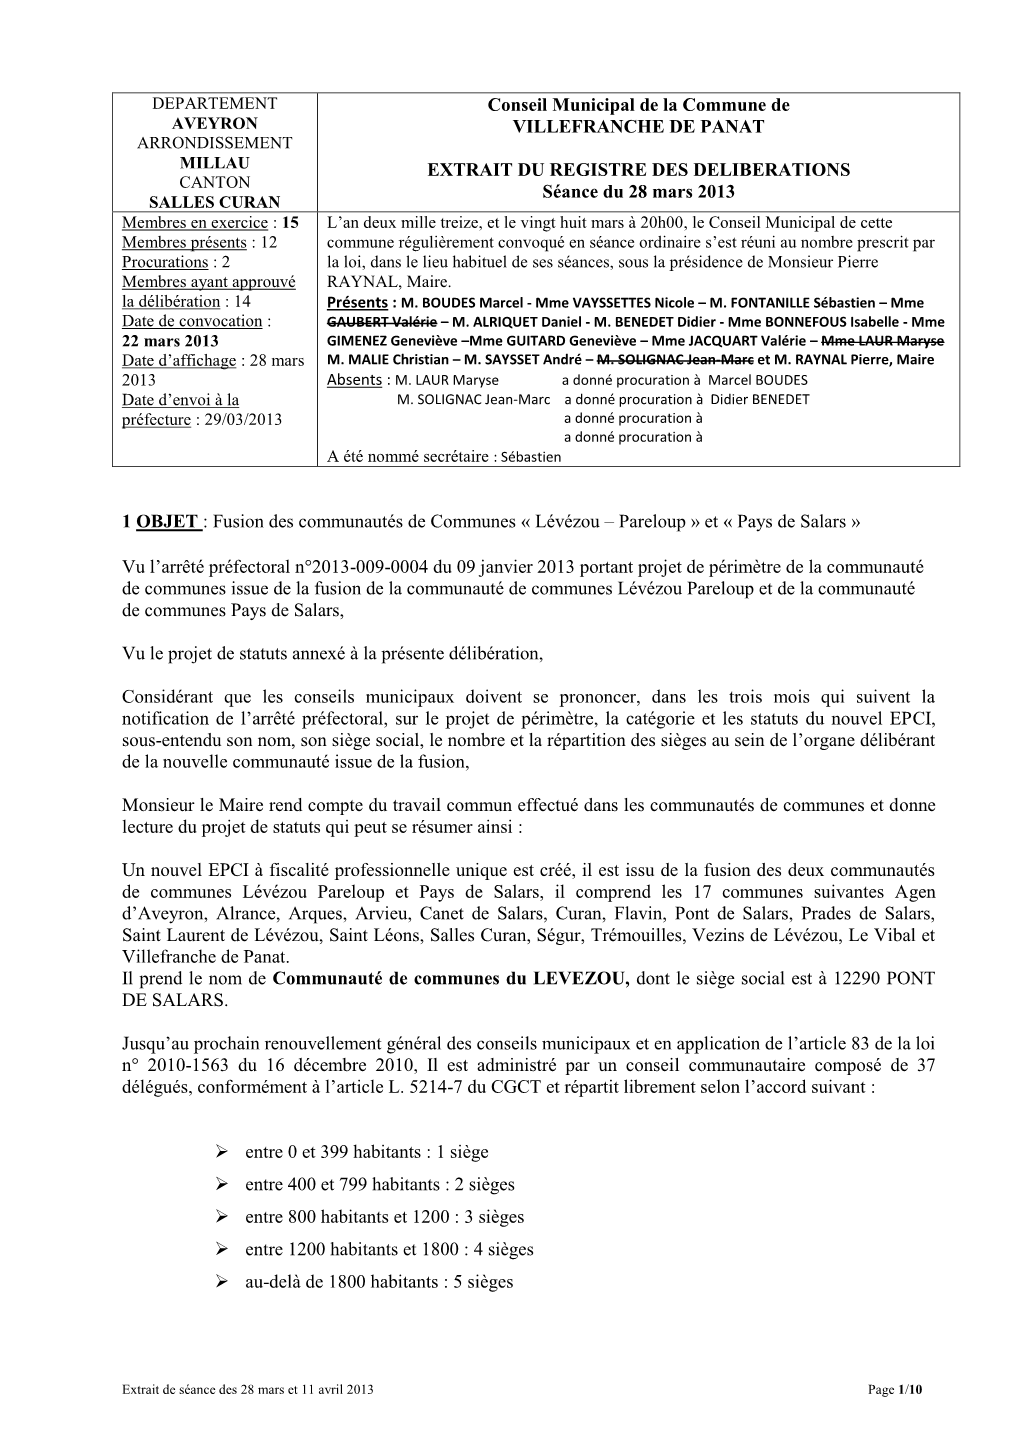 Conseil Municipal De La Commune De VILLEFRANCHE DE PANAT